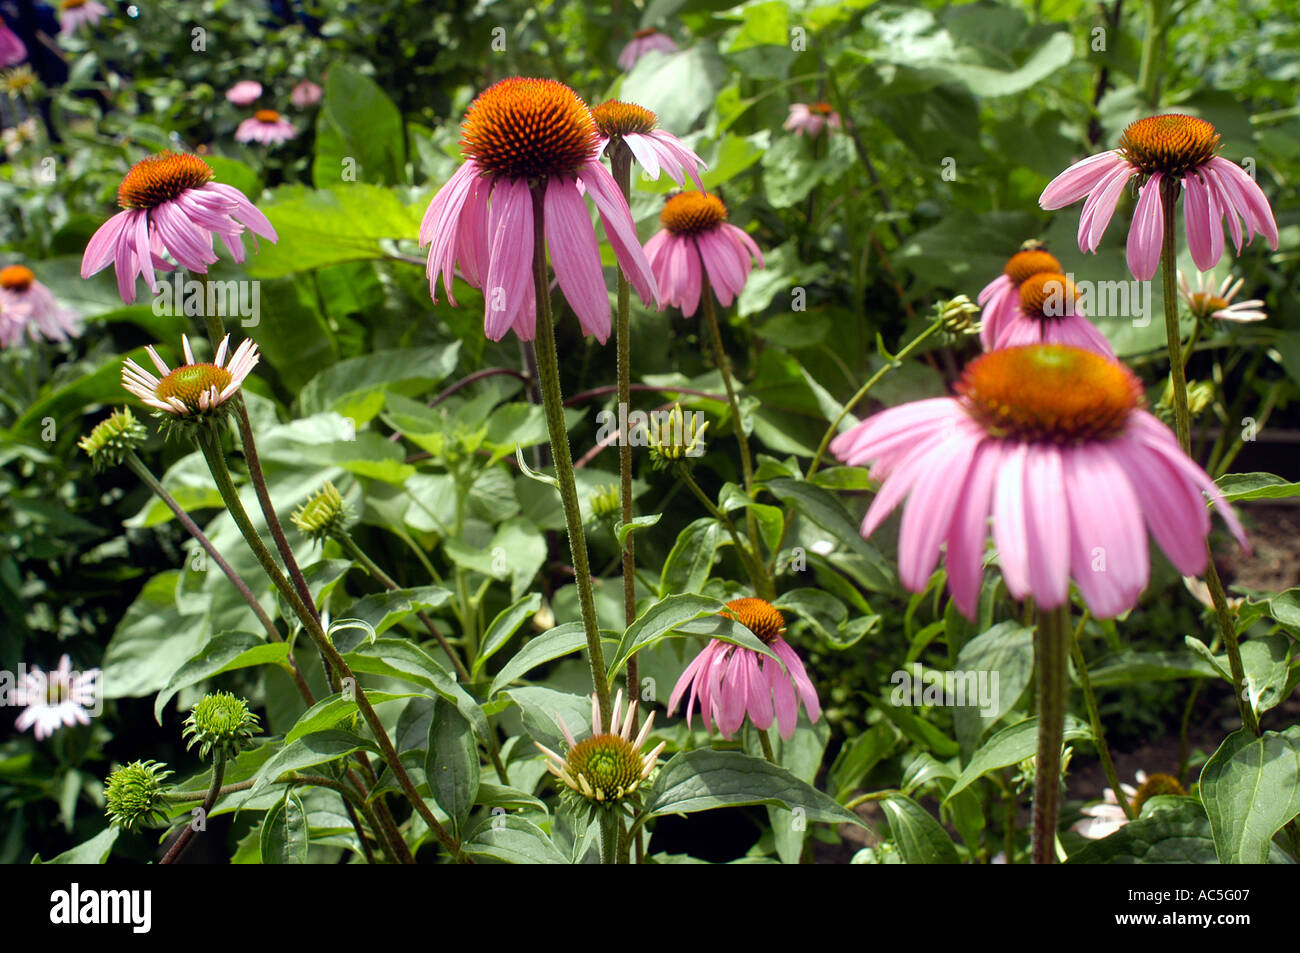 Eine Pflanze Echinacea Sonnenhut in einem gemeinschaftlichen Garten der Anlage ist bekannt für was manche Leute es sind glauben s immunstimulierende Eigenschaften ermöglichen Menschen bekommen und Milderung der Auswirkungen der Erkältung zu vermeiden Stockfoto